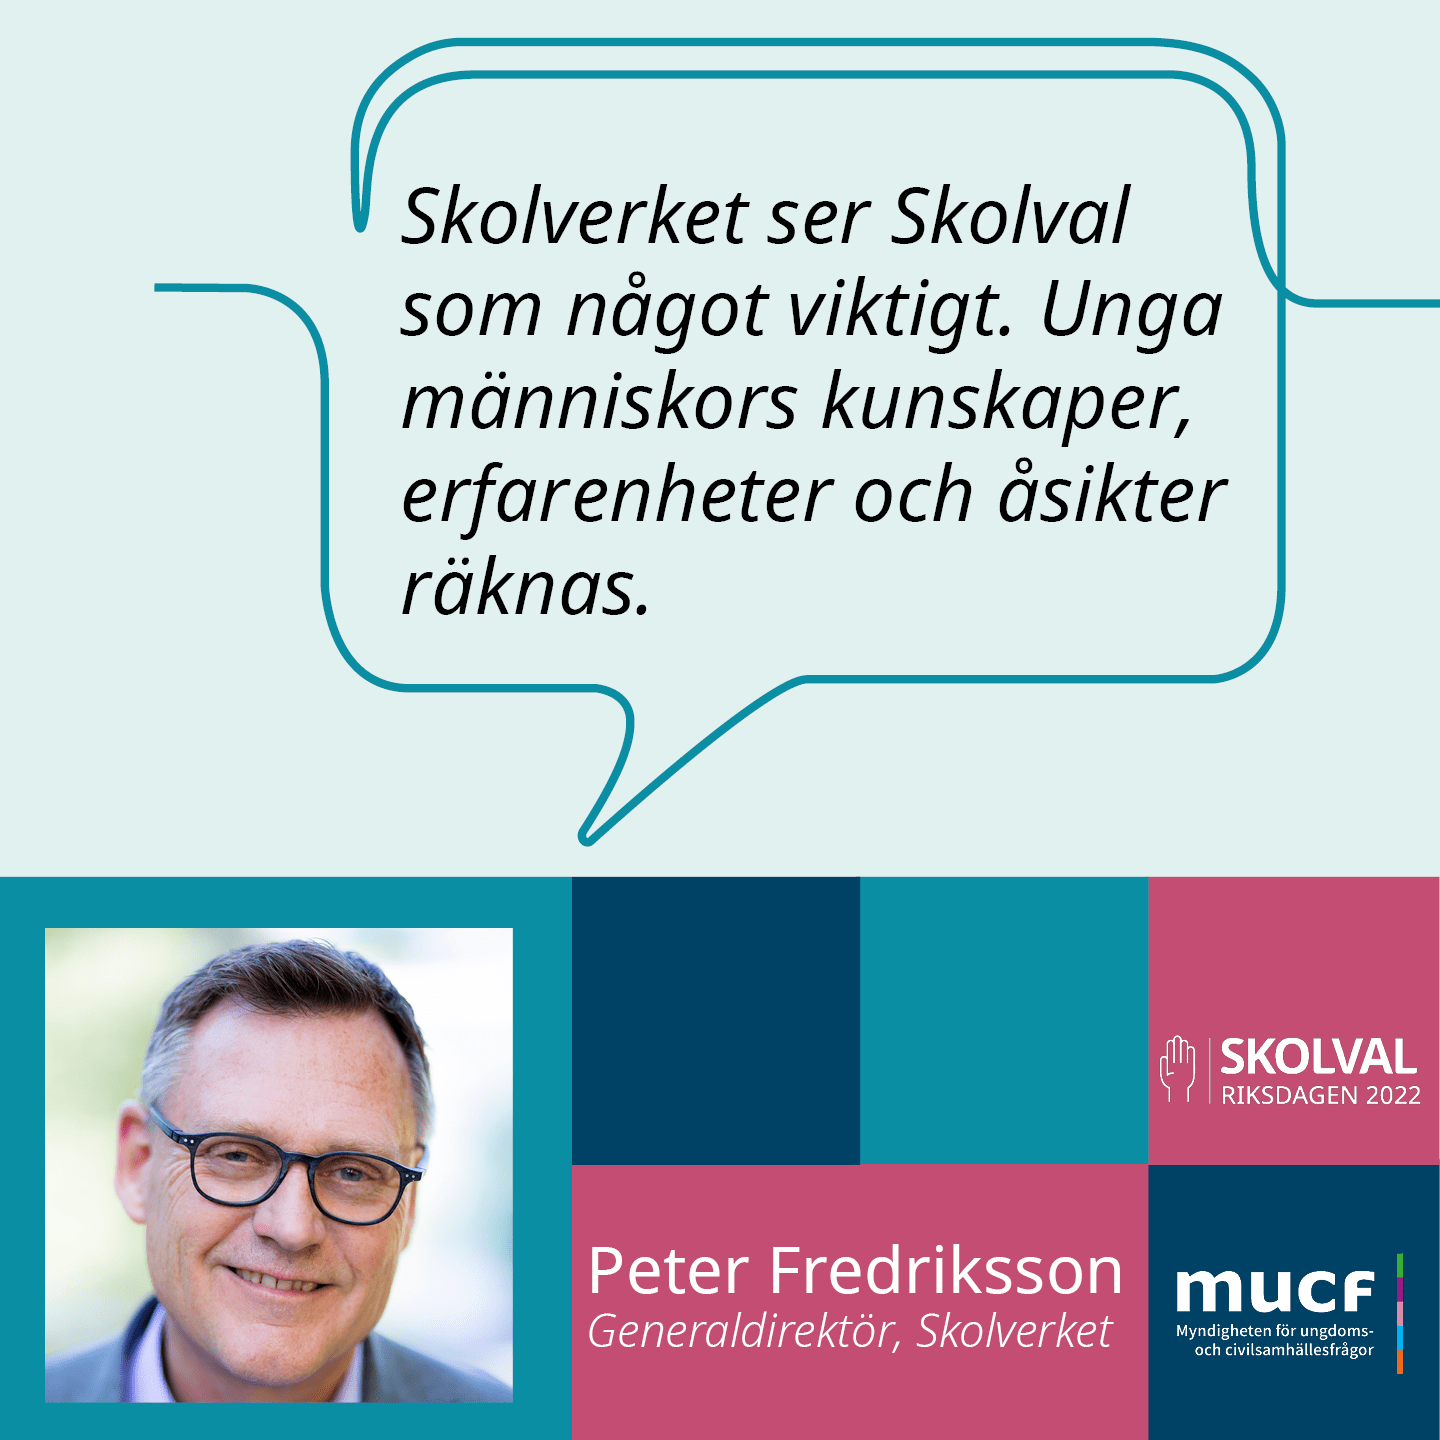 Peter Fredriksson med citatet Skolverket ser Skolval som något viktigt. Unga människors kunskaper, erfarenheter och åsikter räknas.